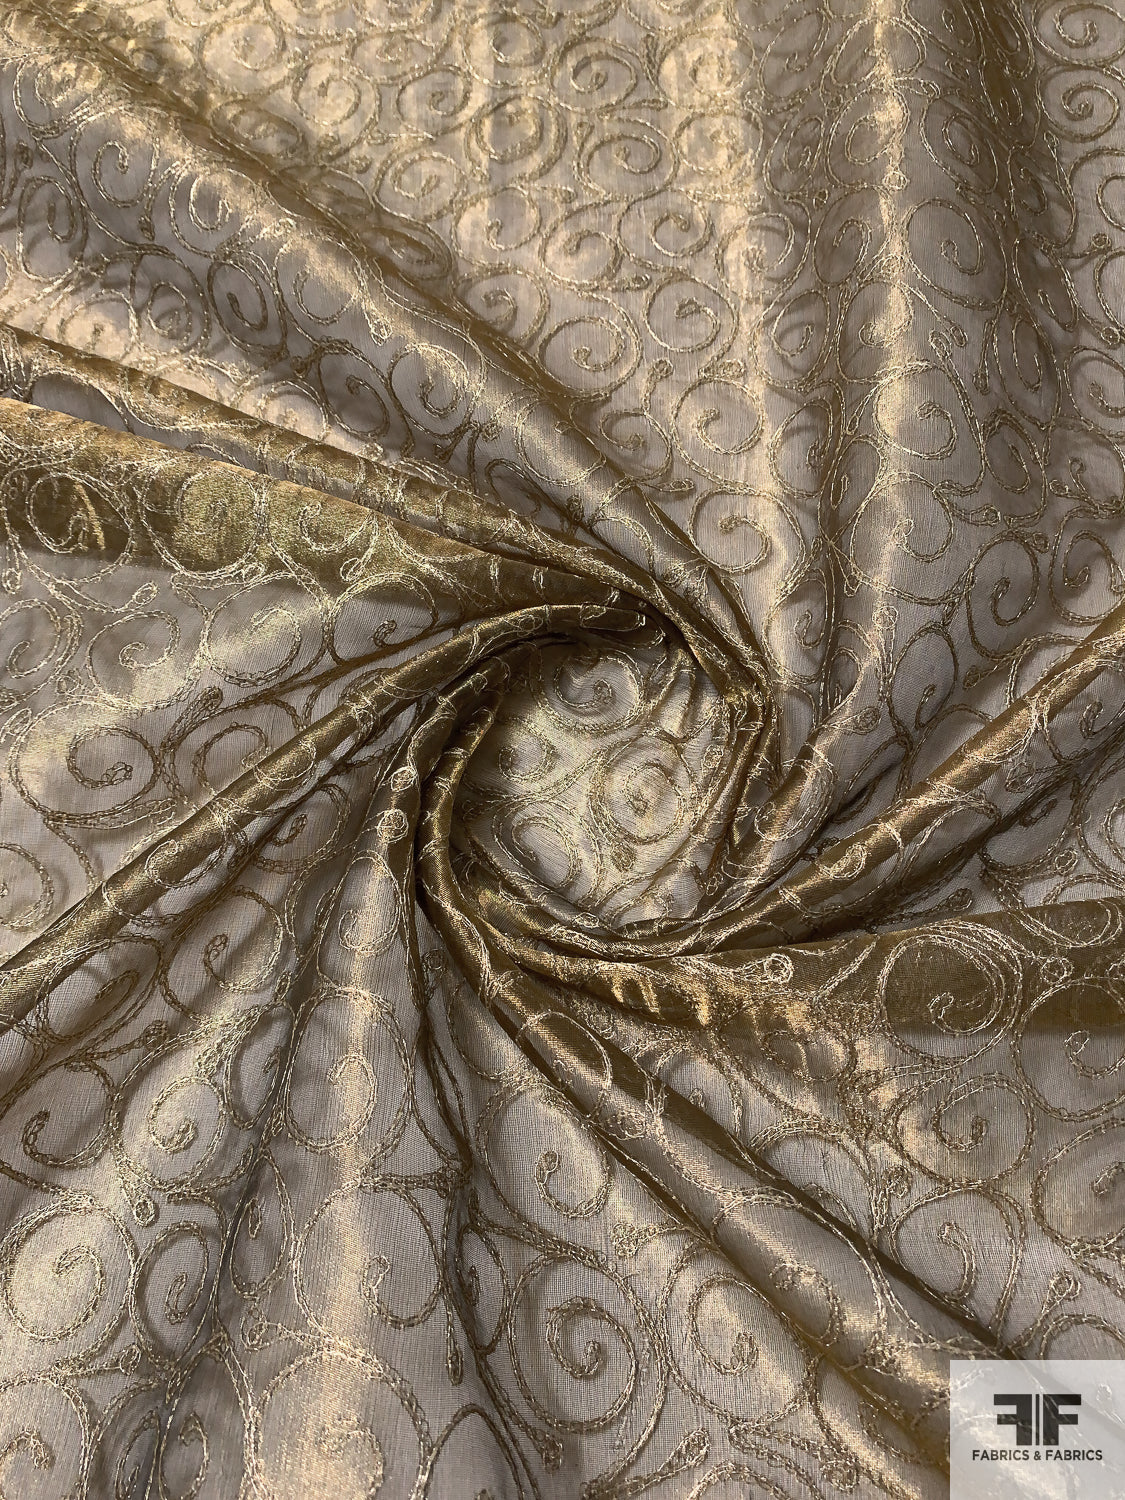 Metallic Organza with Swirl Metallic Thread Embroidery - Brass / Gold